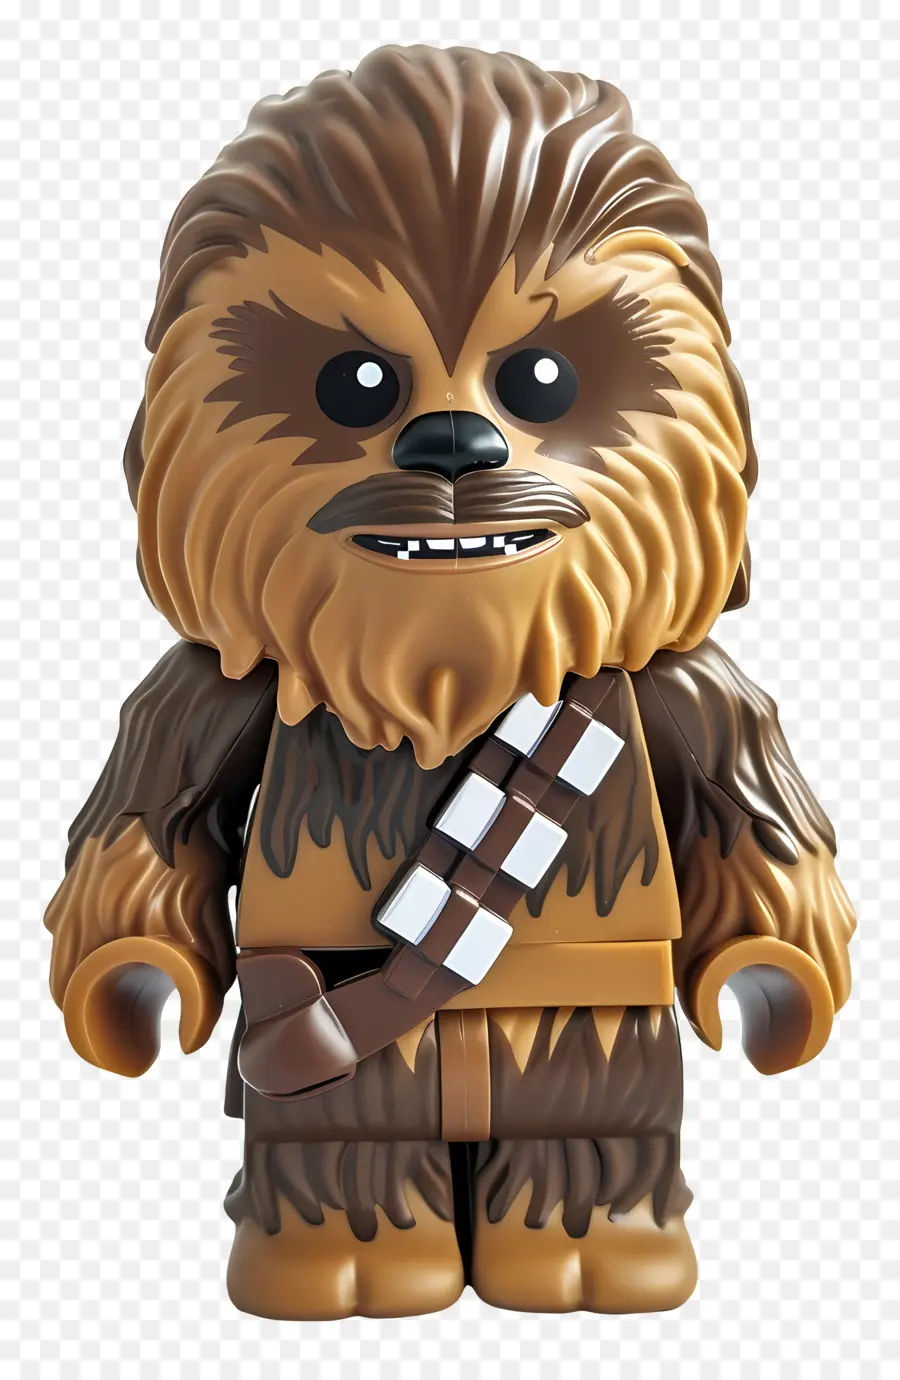 chiến tranh giữa các vì sao - Chewbacca từ Star Wars in Brown Fur Suit